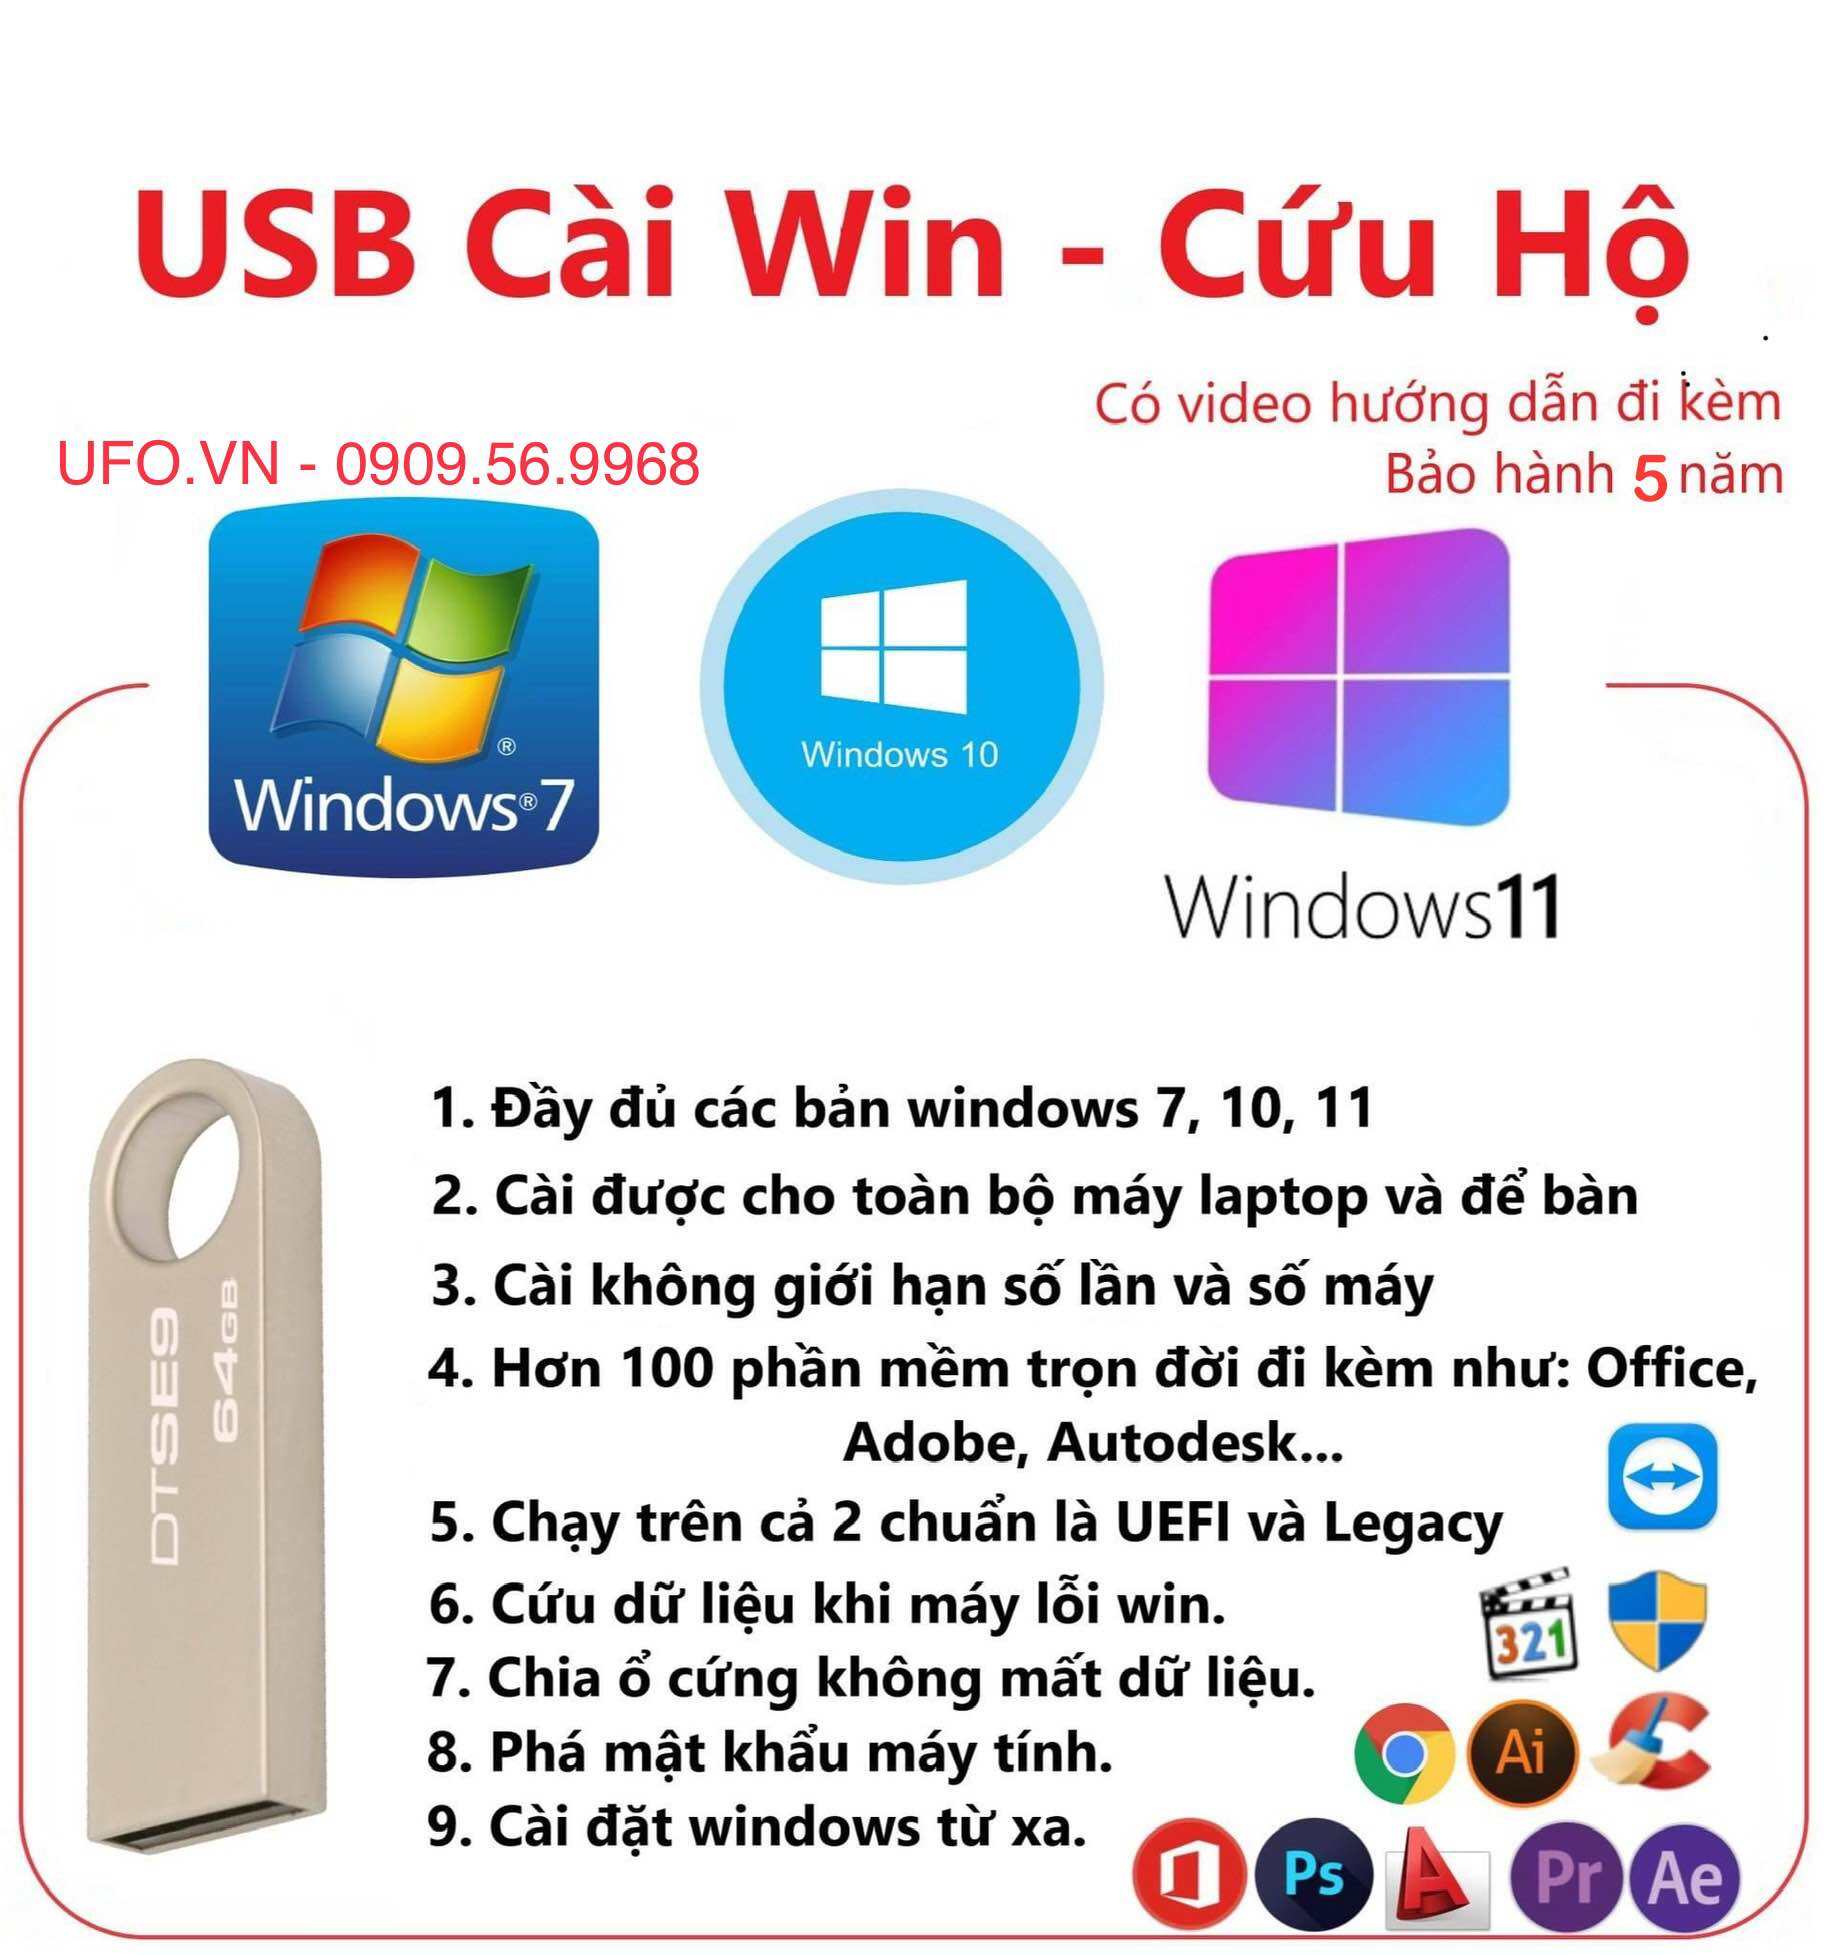 USB cài Win cứu hộ phá Pass cứu dữ liệu máy tính